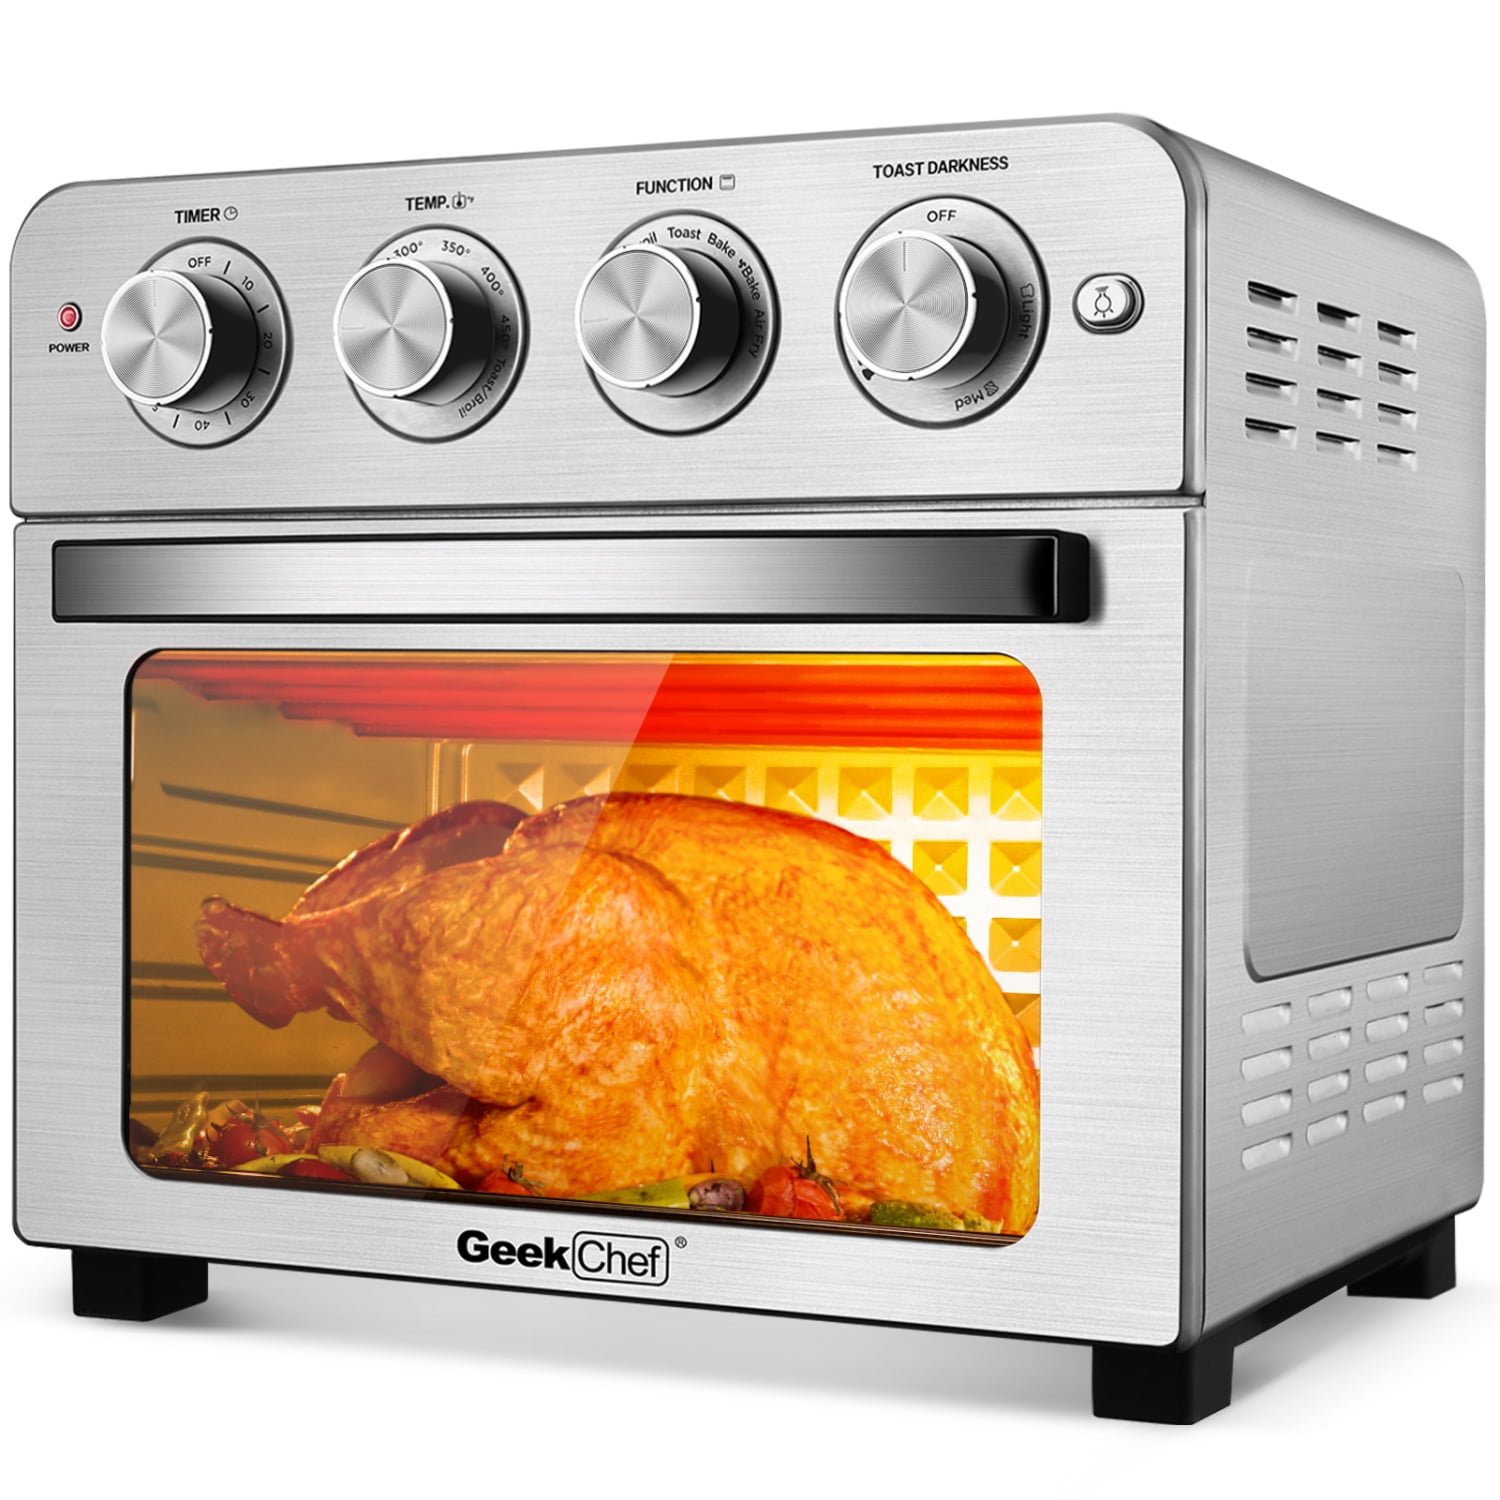 Oven Air Fryer Combo 7-in-1 cooking functions 1550 watt air fryer